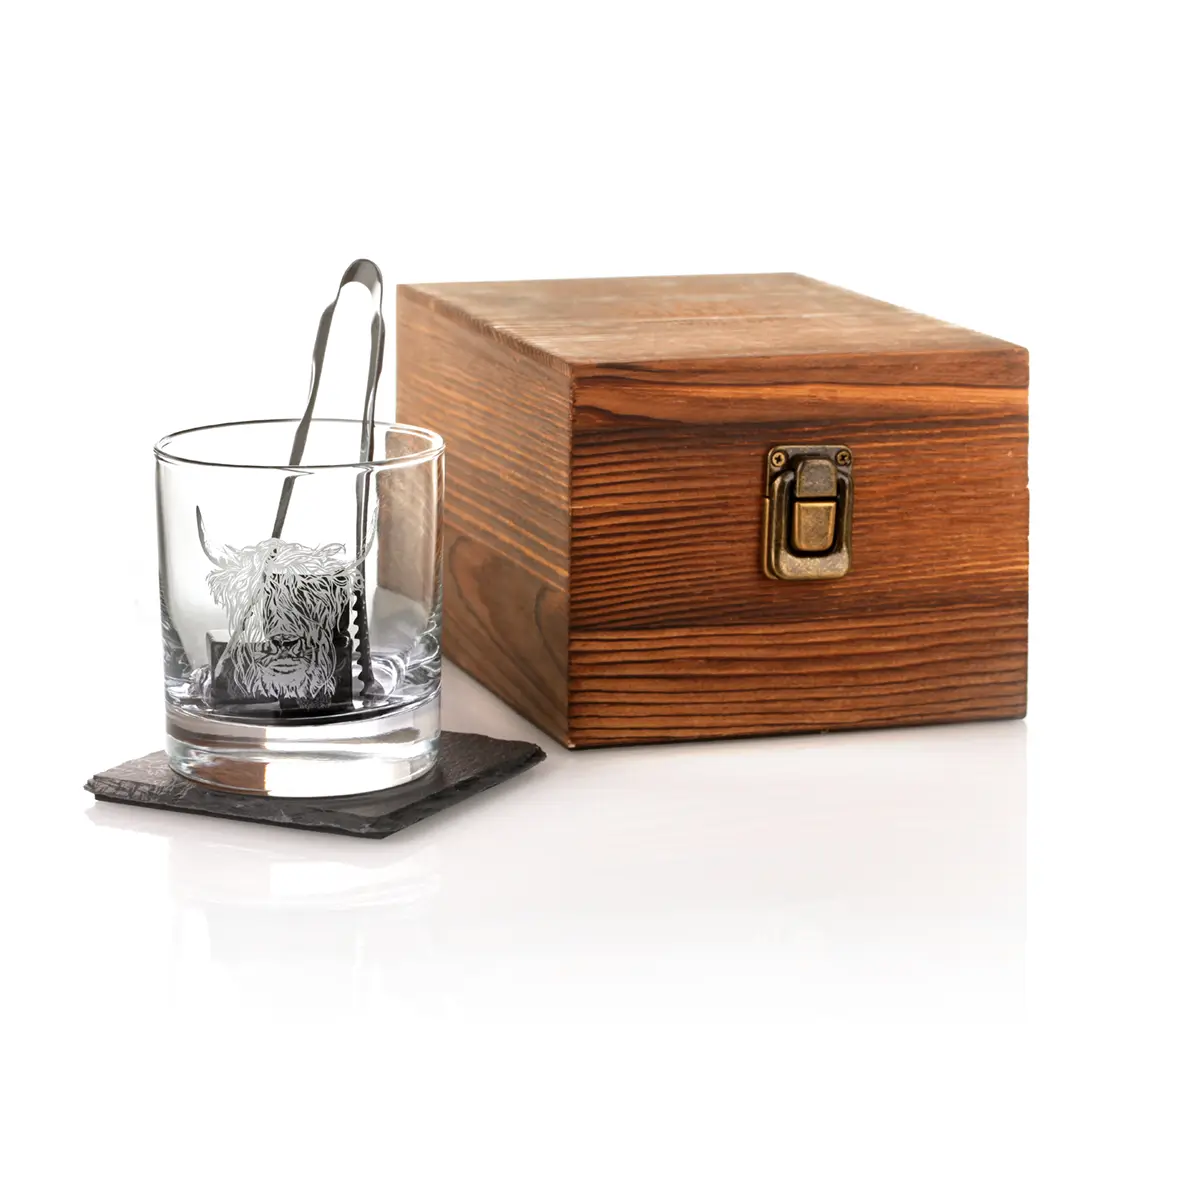 Highland Cow Whisky Set - Whiskyglas mit Whisky-Steinen & Schiefer Untersetzer in Holzbox